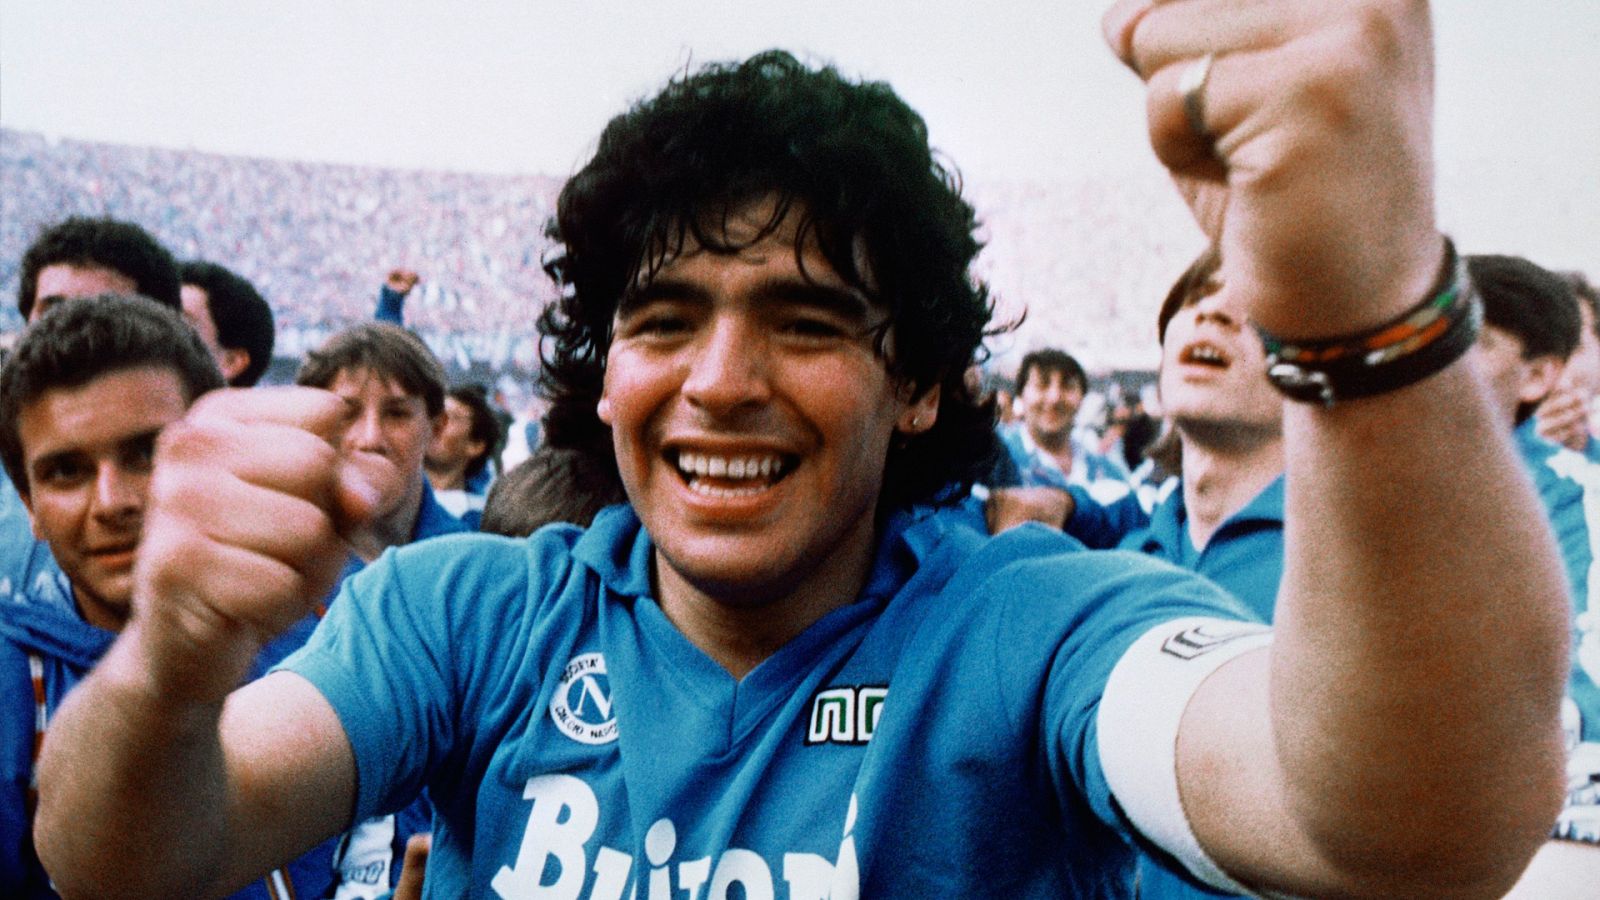 Somos documentales - Diego Maradona - Ver ahora